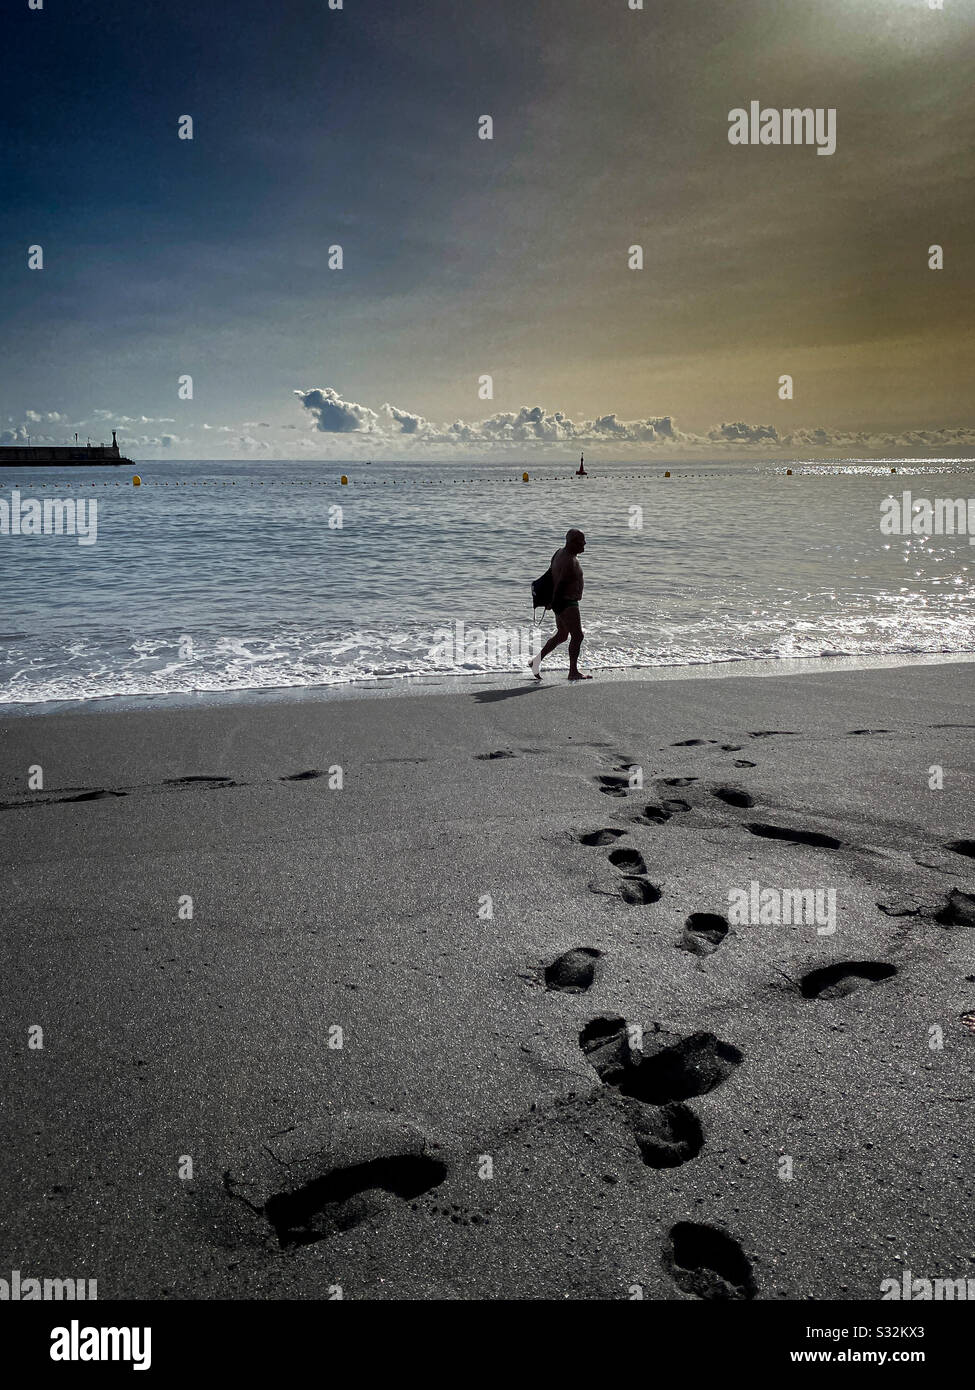 Hombre paseando disfrutando de una mañana de relax en la playa Stock Photo